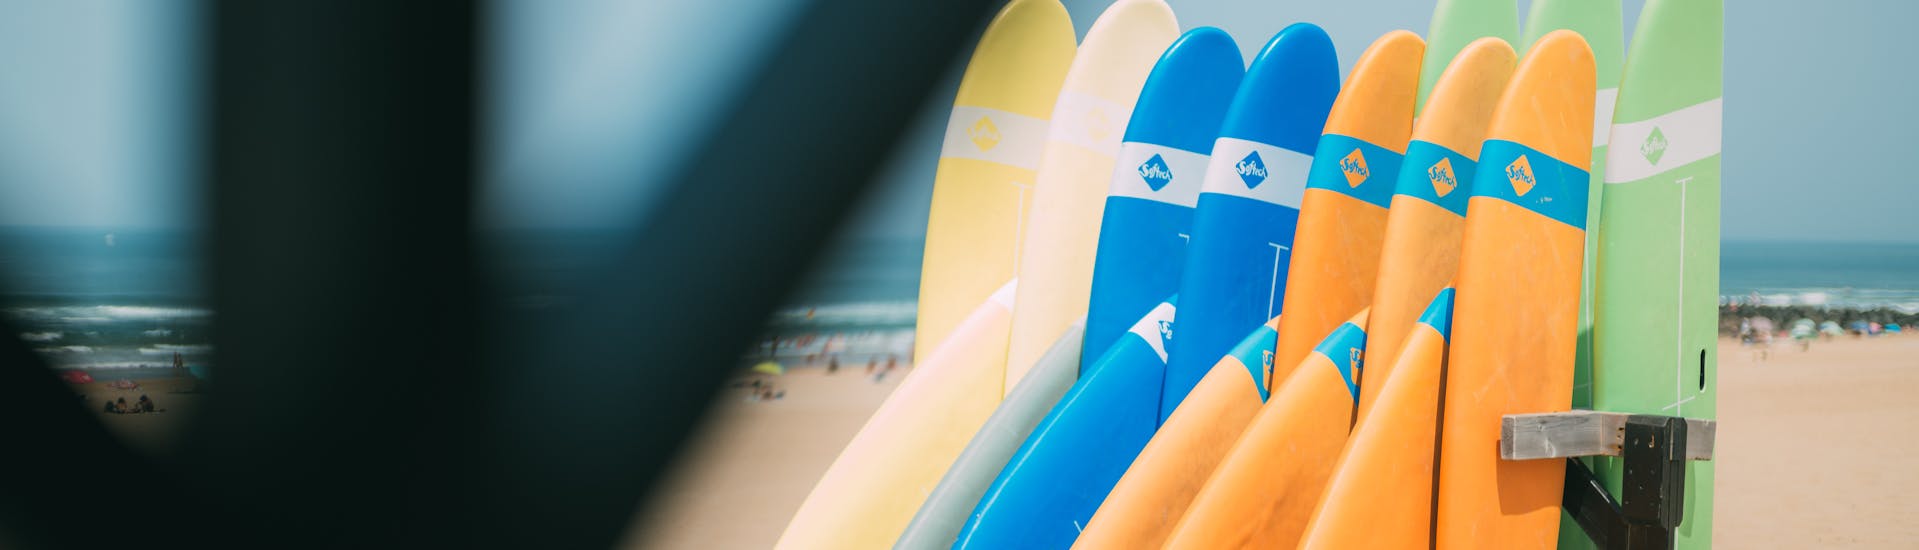 Cours privé de surf (dès 6 ans) sur la plage de Marinella avec ESCF Anglet